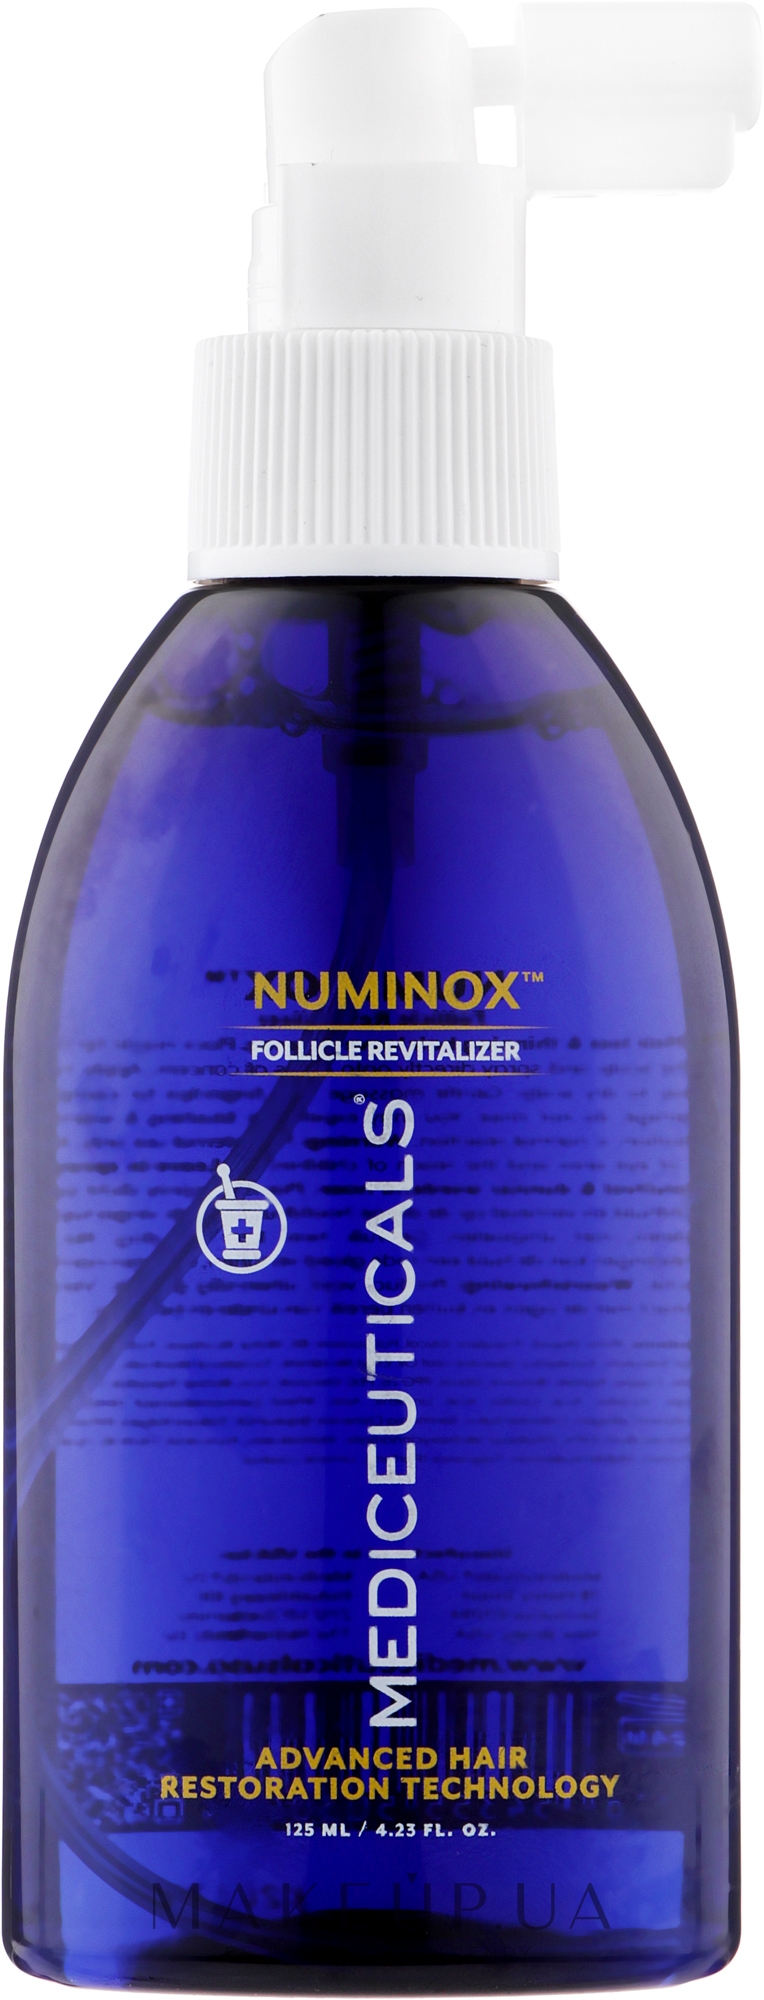 Стимулювальна сироватка для росту волосся та здоров'я шкіри голови, для чоловіків - Mediceuticals Advanced Hair Restoration Technology Numinox — фото 125ml